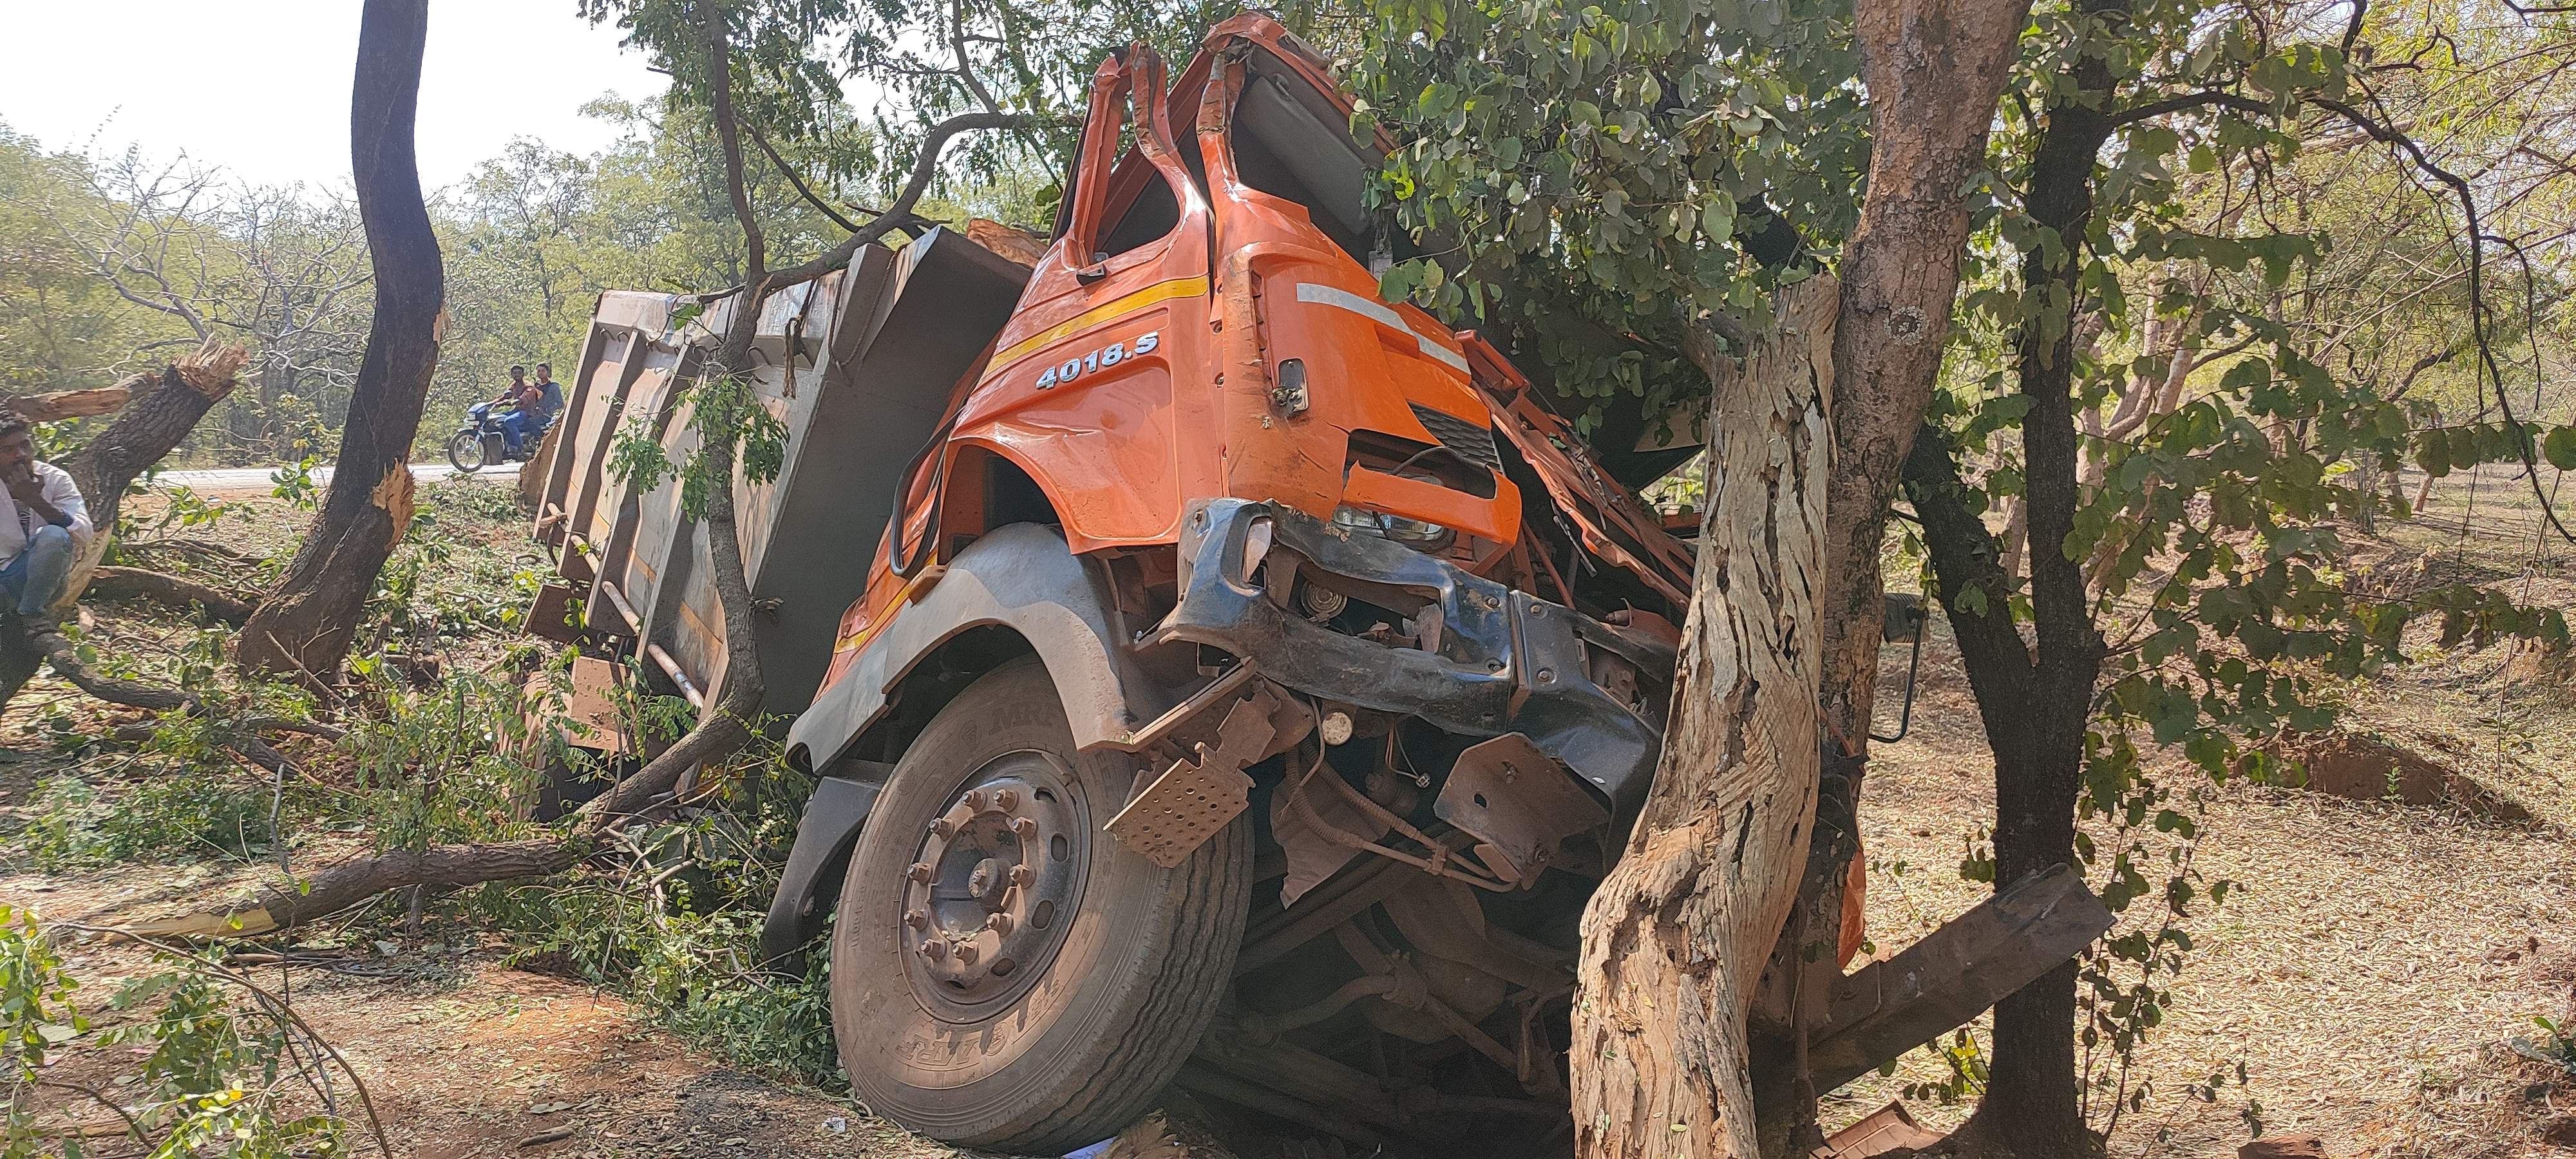 पेड़ों को तोड़ती हुई भैंसबोड़ रास्ते में घुसी ट्रक, चालक गंभीर